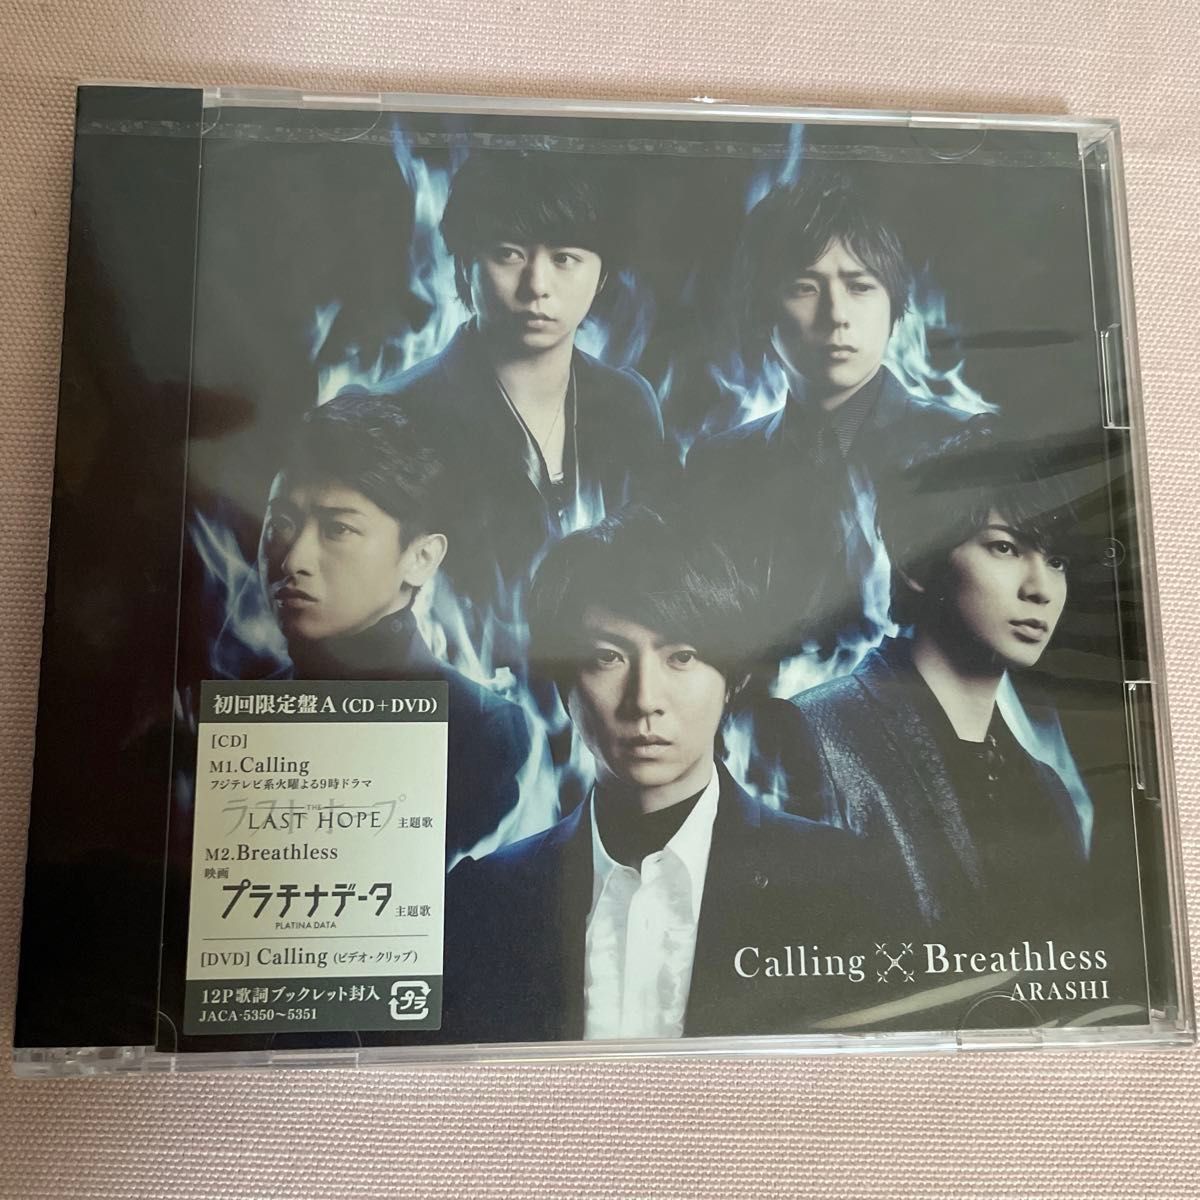 嵐 CD+DVD/Calling/Breathless 初回盤A+Bセット 13/3/6発売 (ギフト不可) オリコン加盟店 